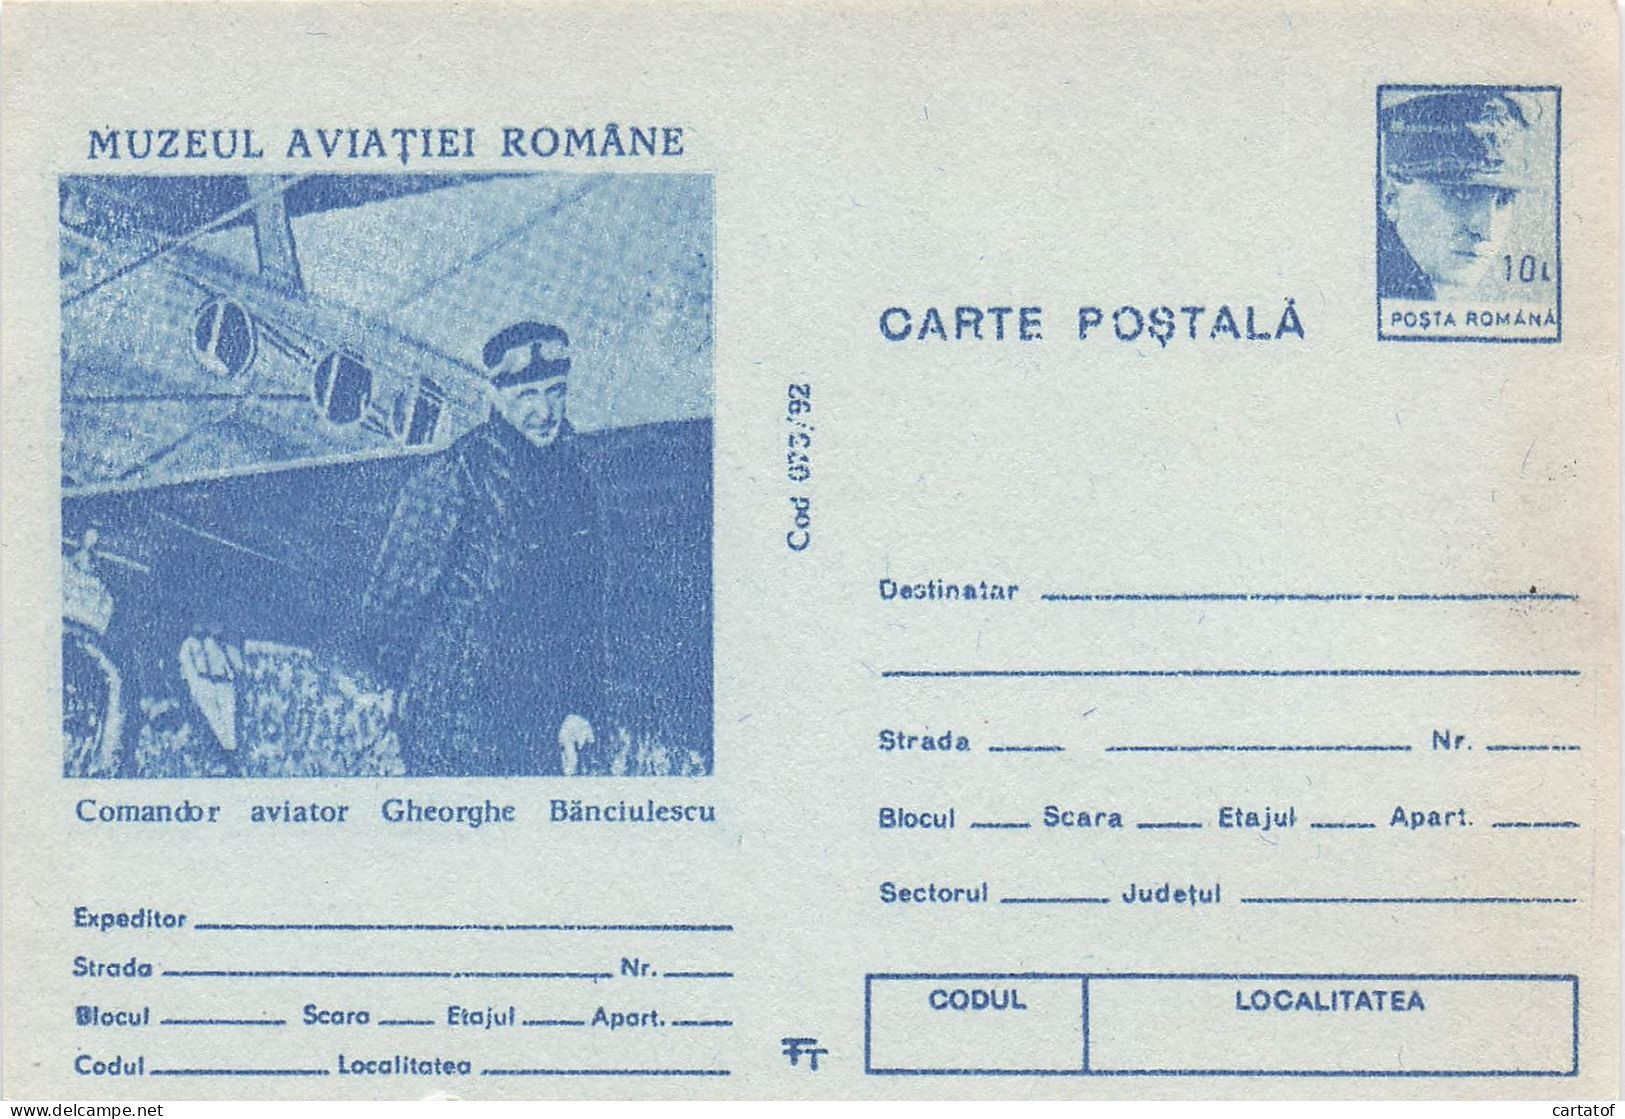 MUZEUL AVIATIEI ROMANE . Commandor Aviator Gheorghe Banciulescu . - Roumanie